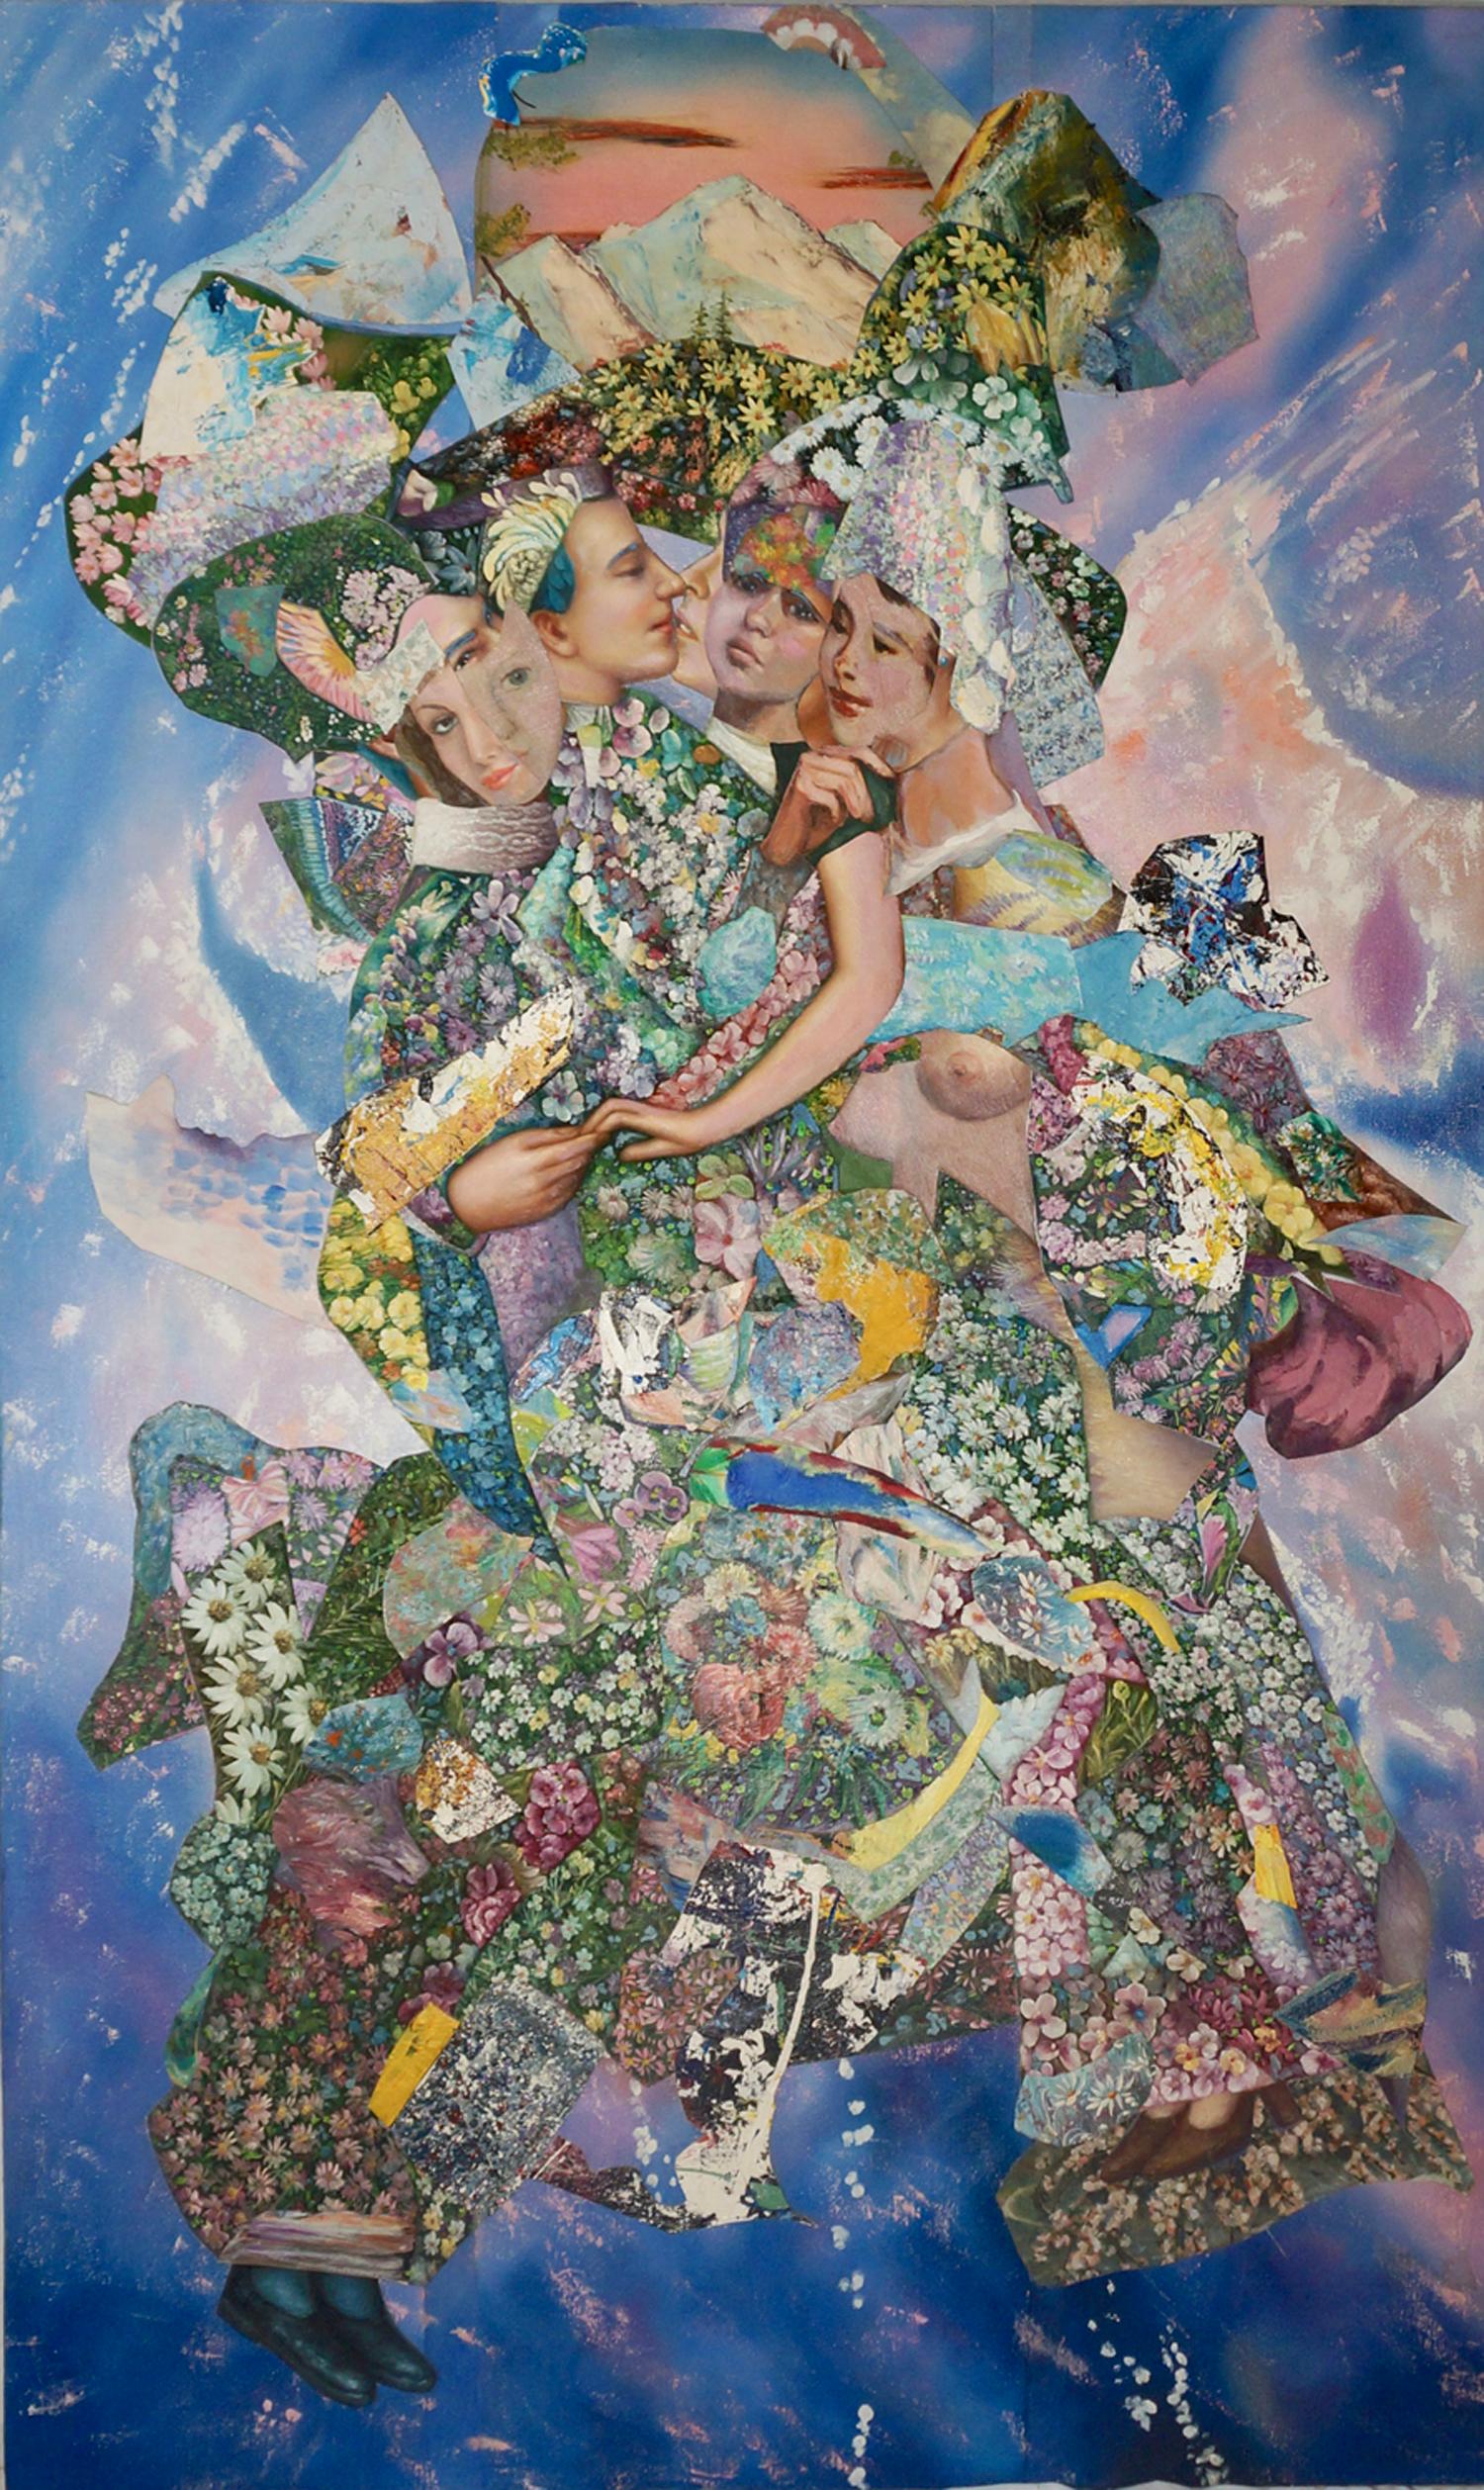 "Mountain Embrace", contemporain, bleus, roses, collage, peinture acrylique. - Painting de John Baker